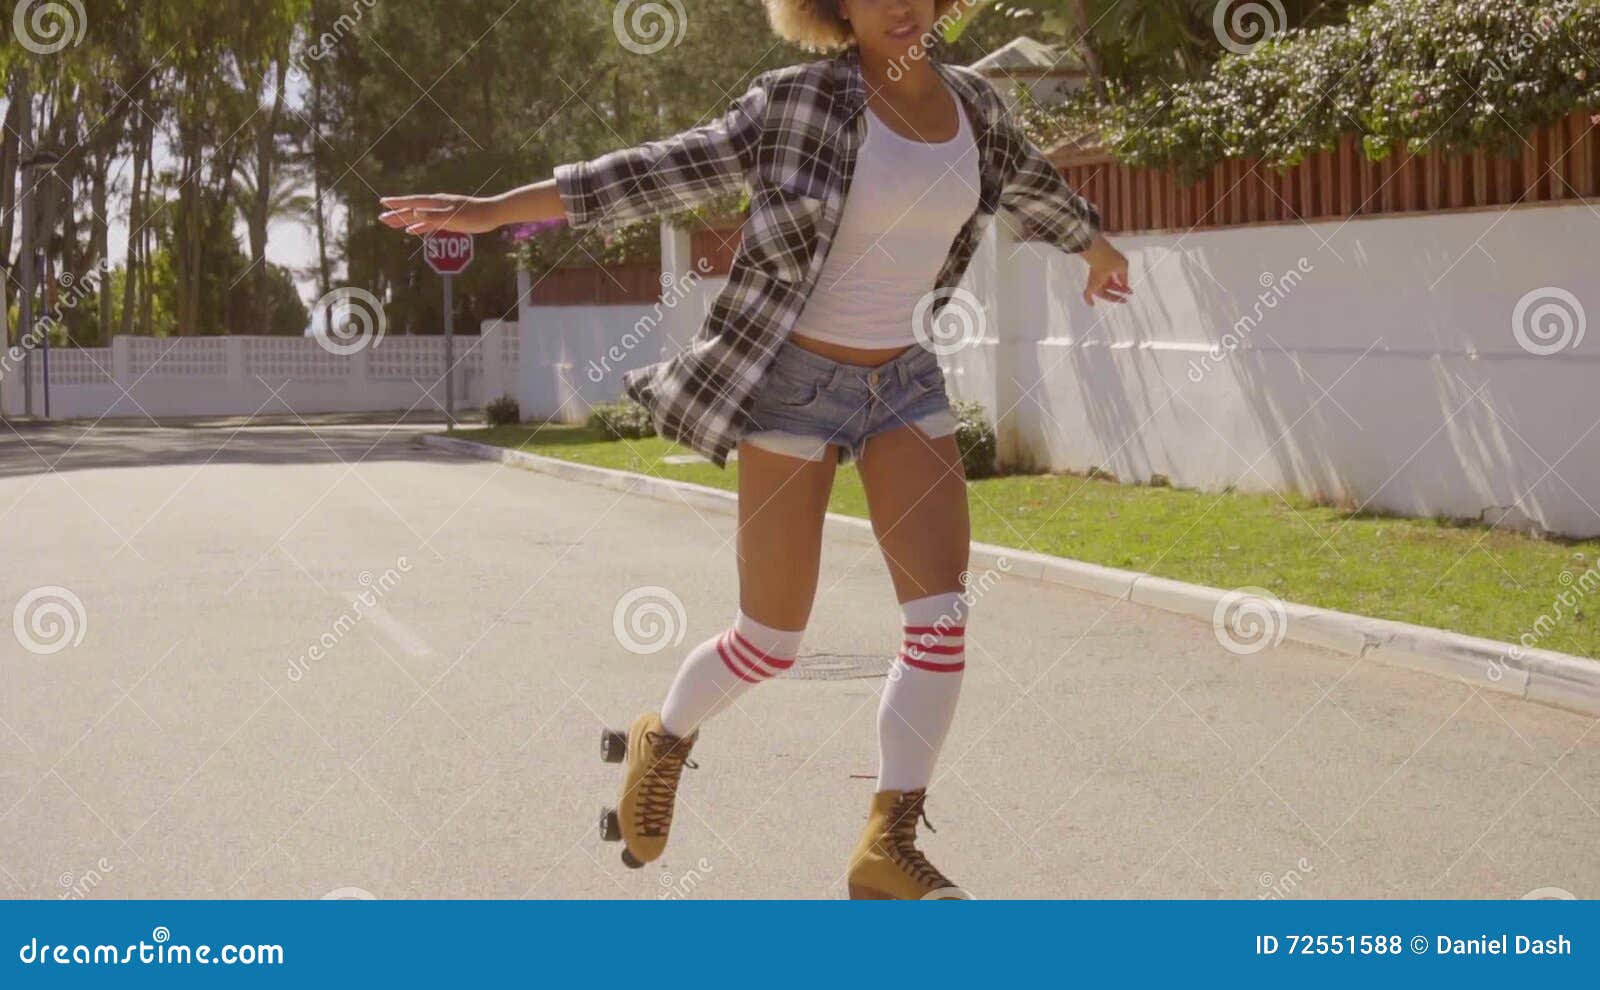 Girls in socks and roller skates